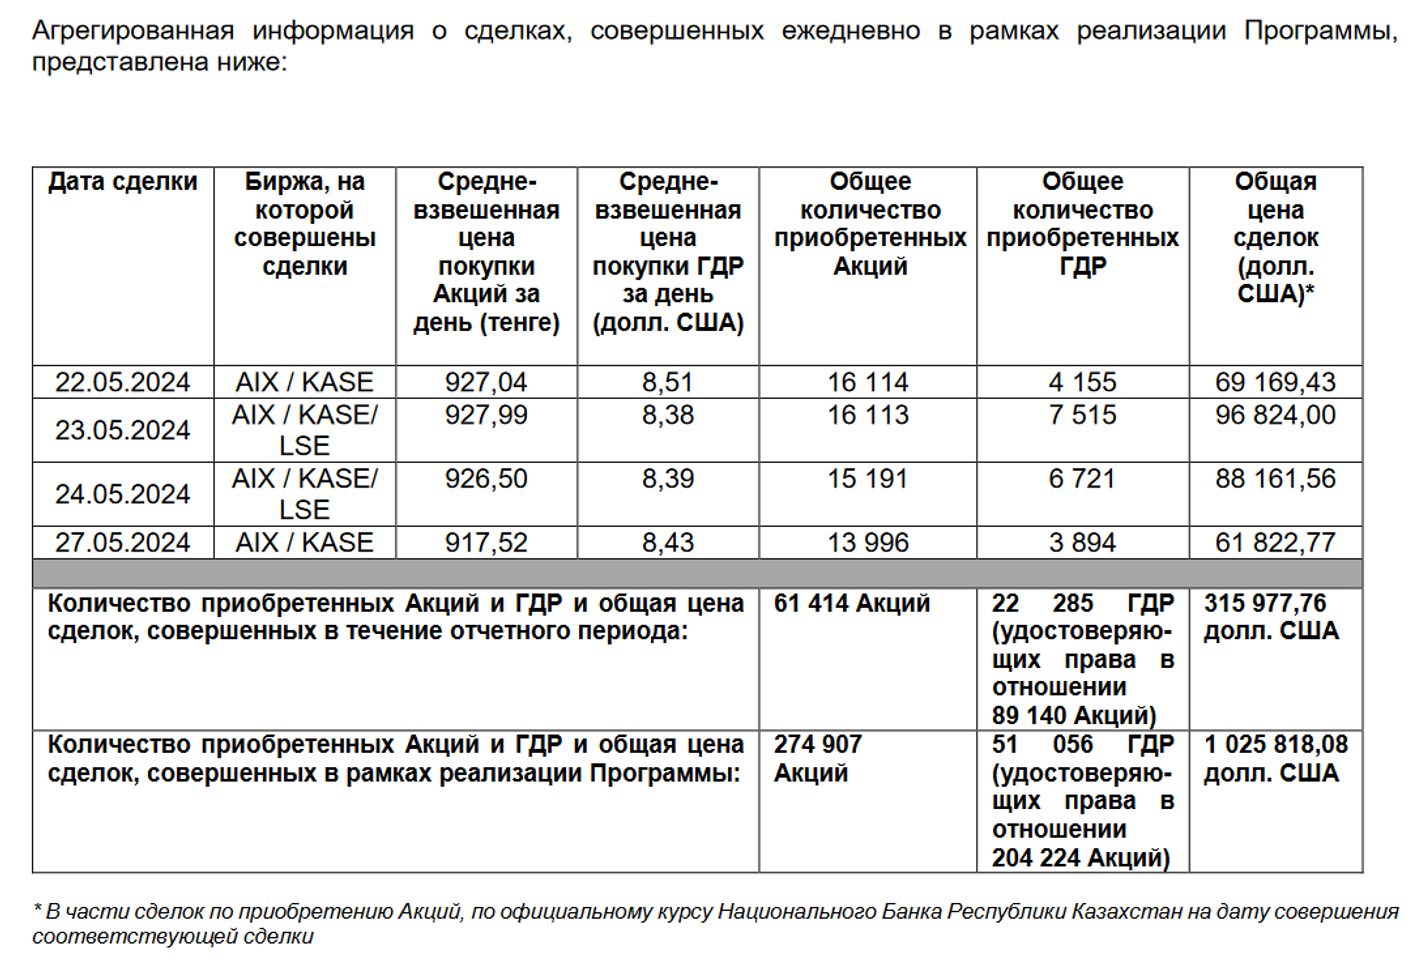 Эйр Астана выкупила свои акции и ГДР ещё на $315,9 тысяч  3038805 — Kapital.kz 